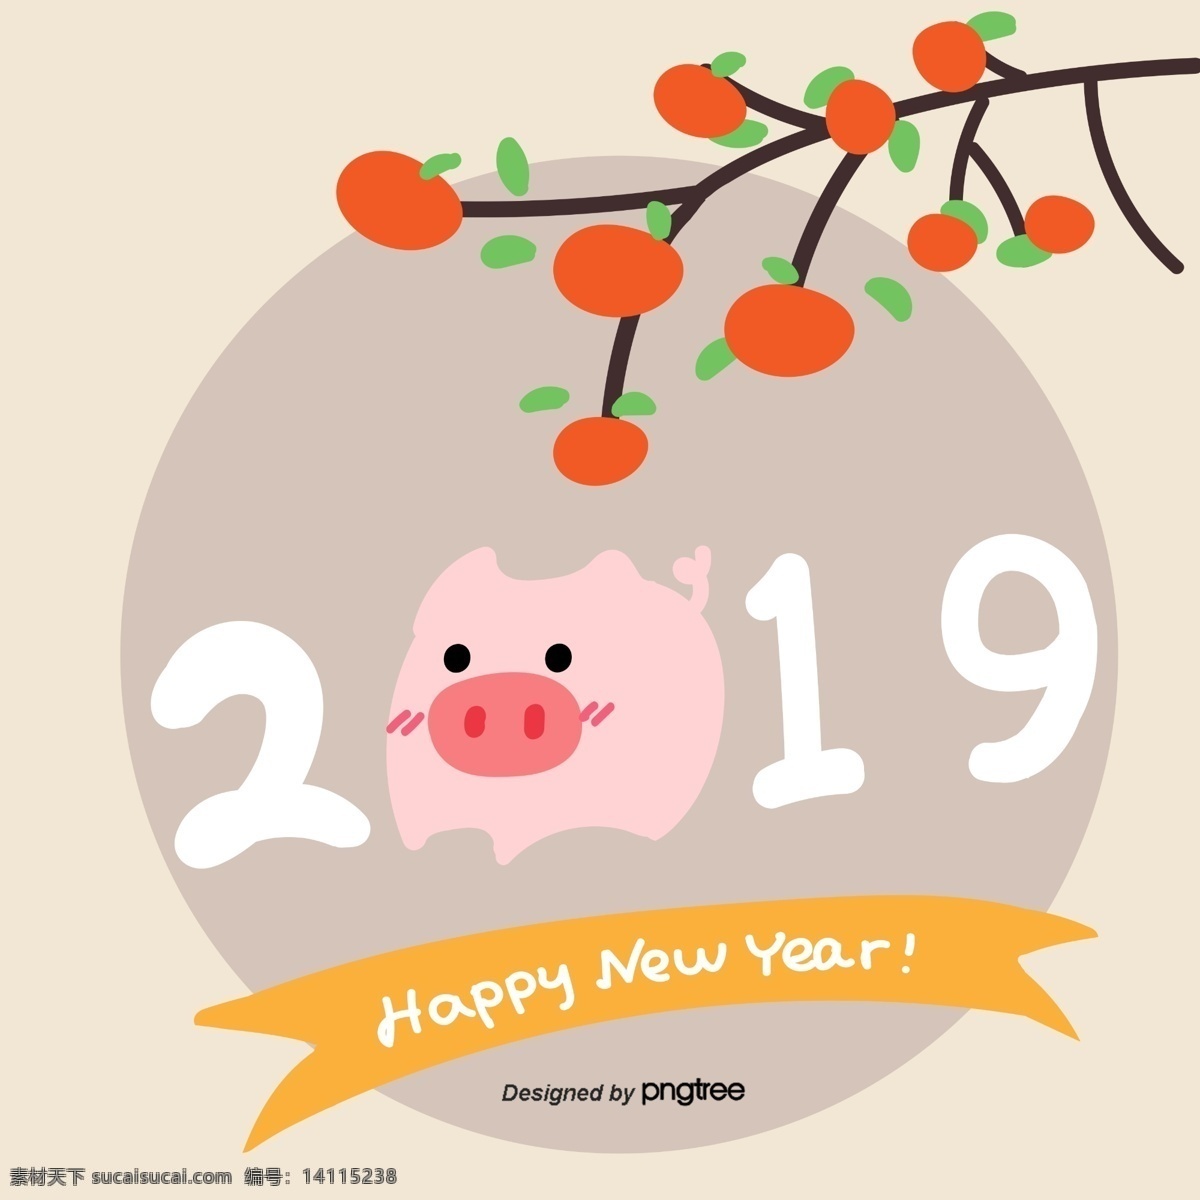 新 年 2019 黄色 新的 猪 红色 祝你新年快乐 可爱 柿子 灰色